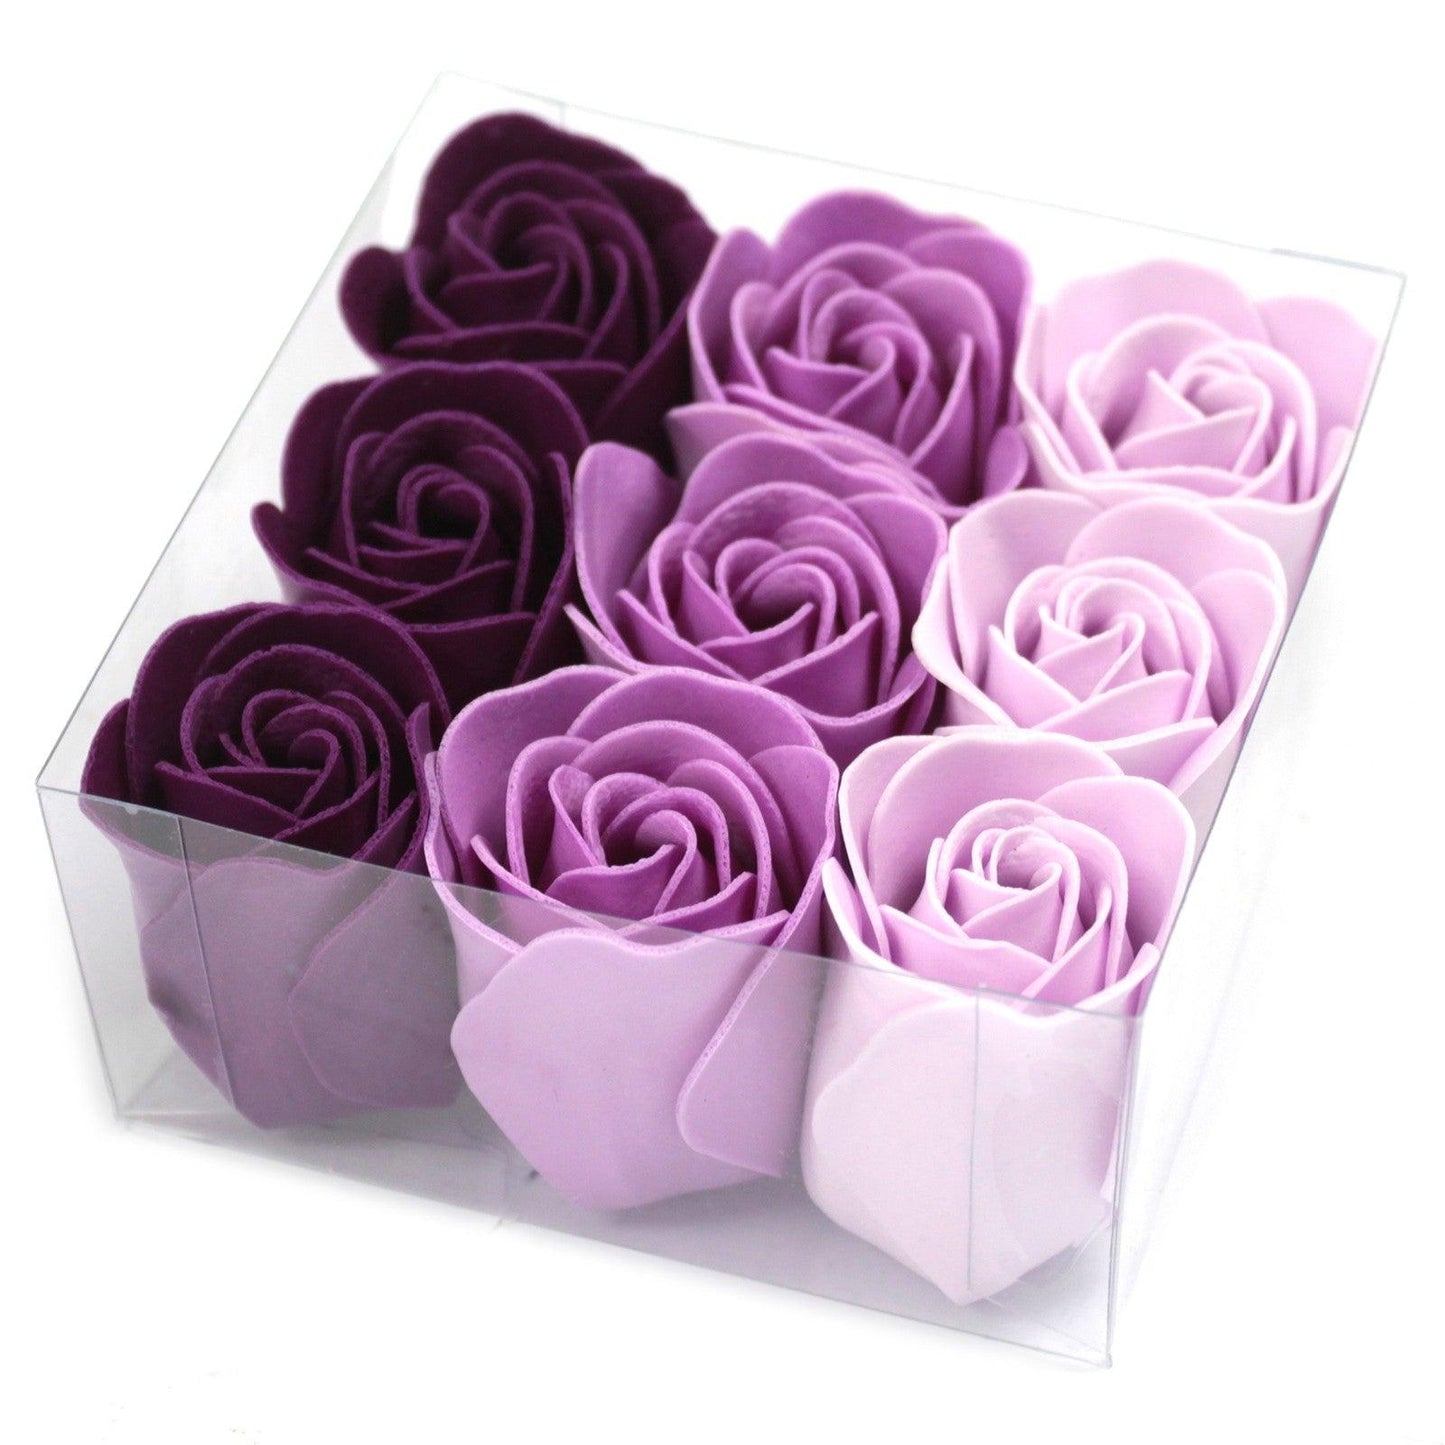 Set of 9 Soap Flower - Lavender Roses - DuvetDay.co.uk